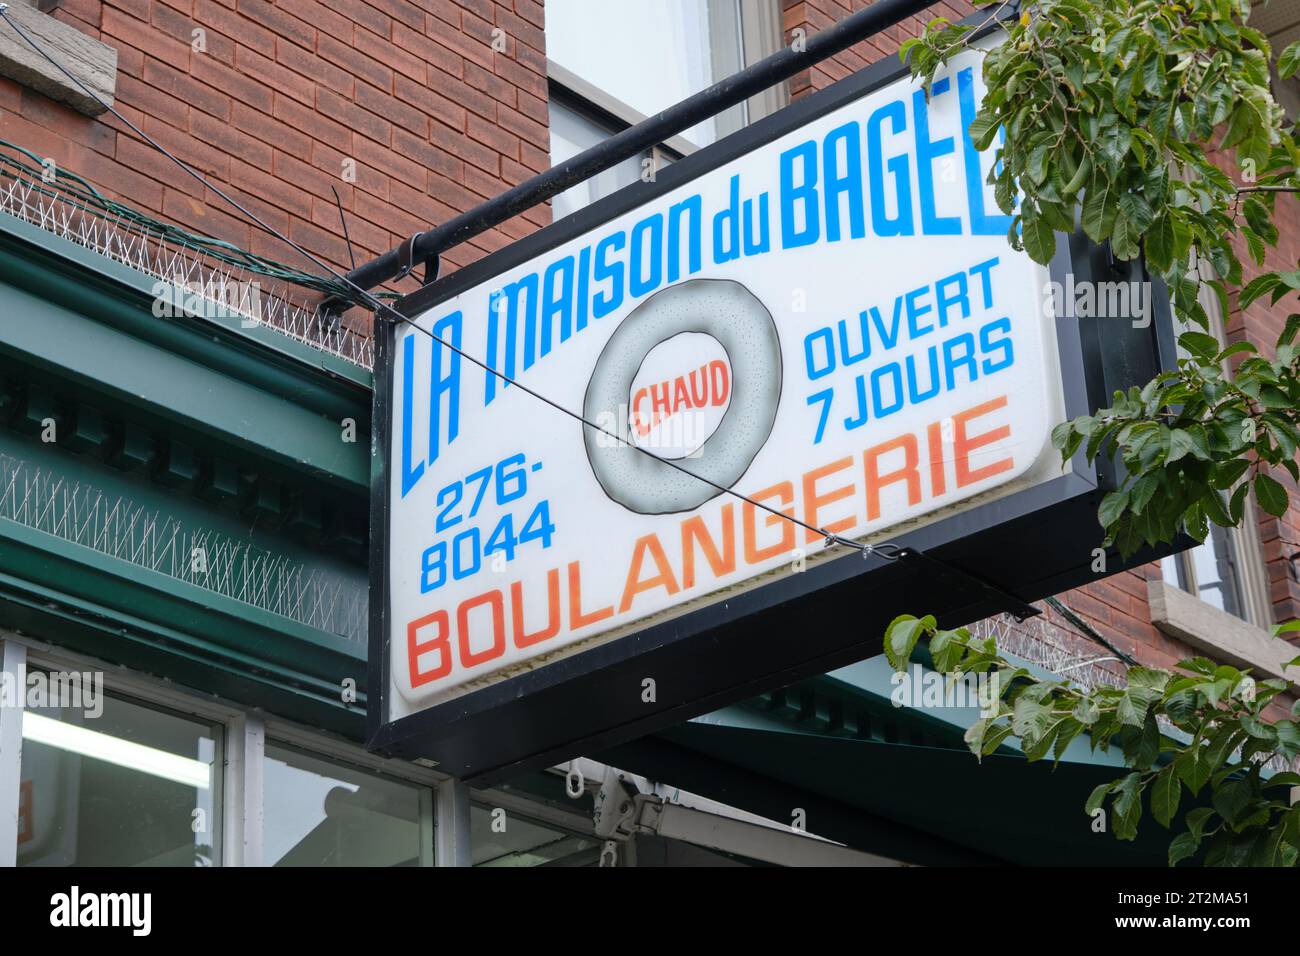 La Maison du Bagel sign, at St-Viateur Bagel shop in Montreal Stock Photo